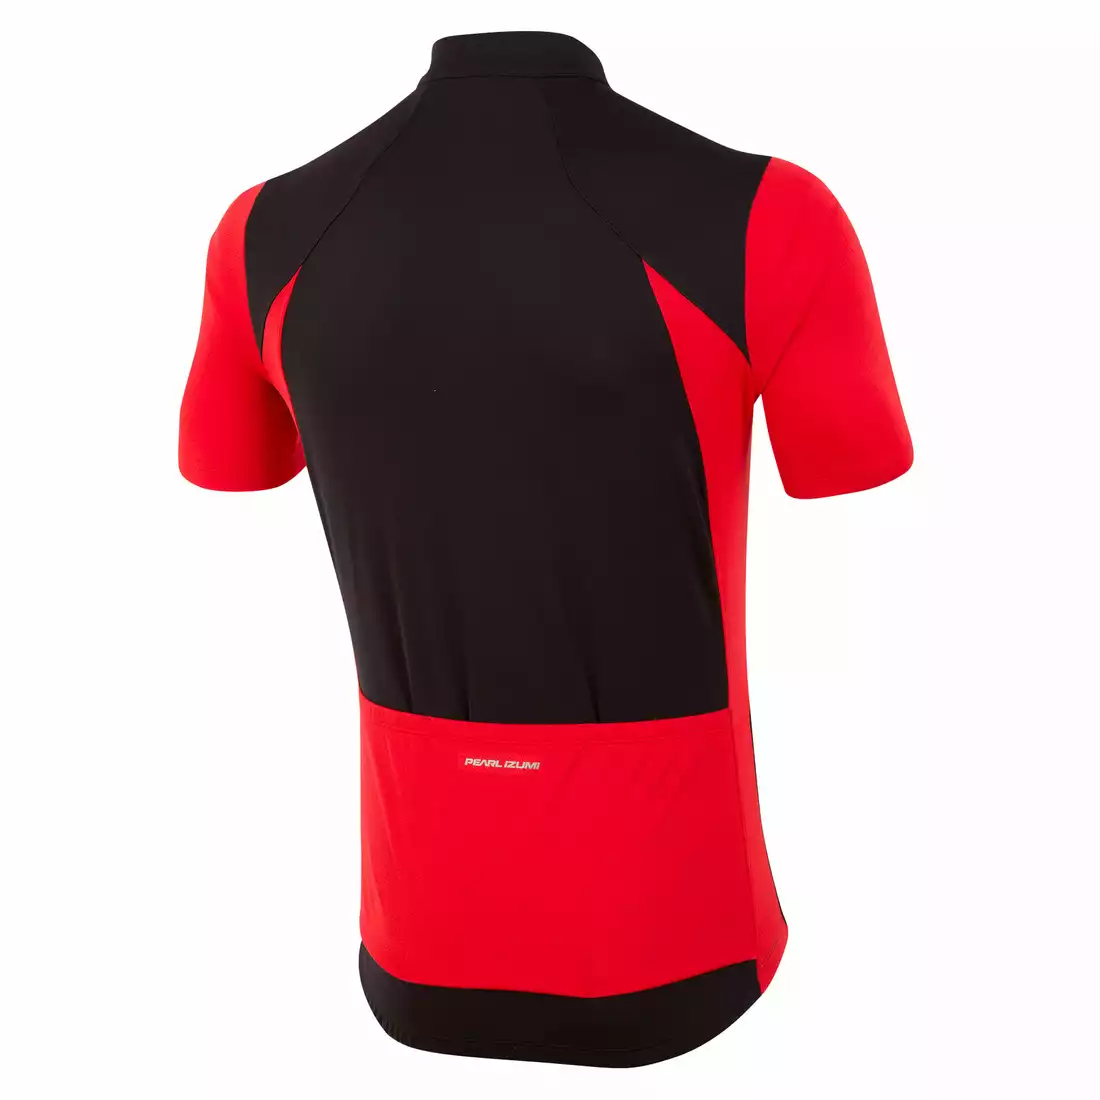 PEARL IZUMI SELECT koszulka rowerowa 11121608-2FK czarno-czerwona